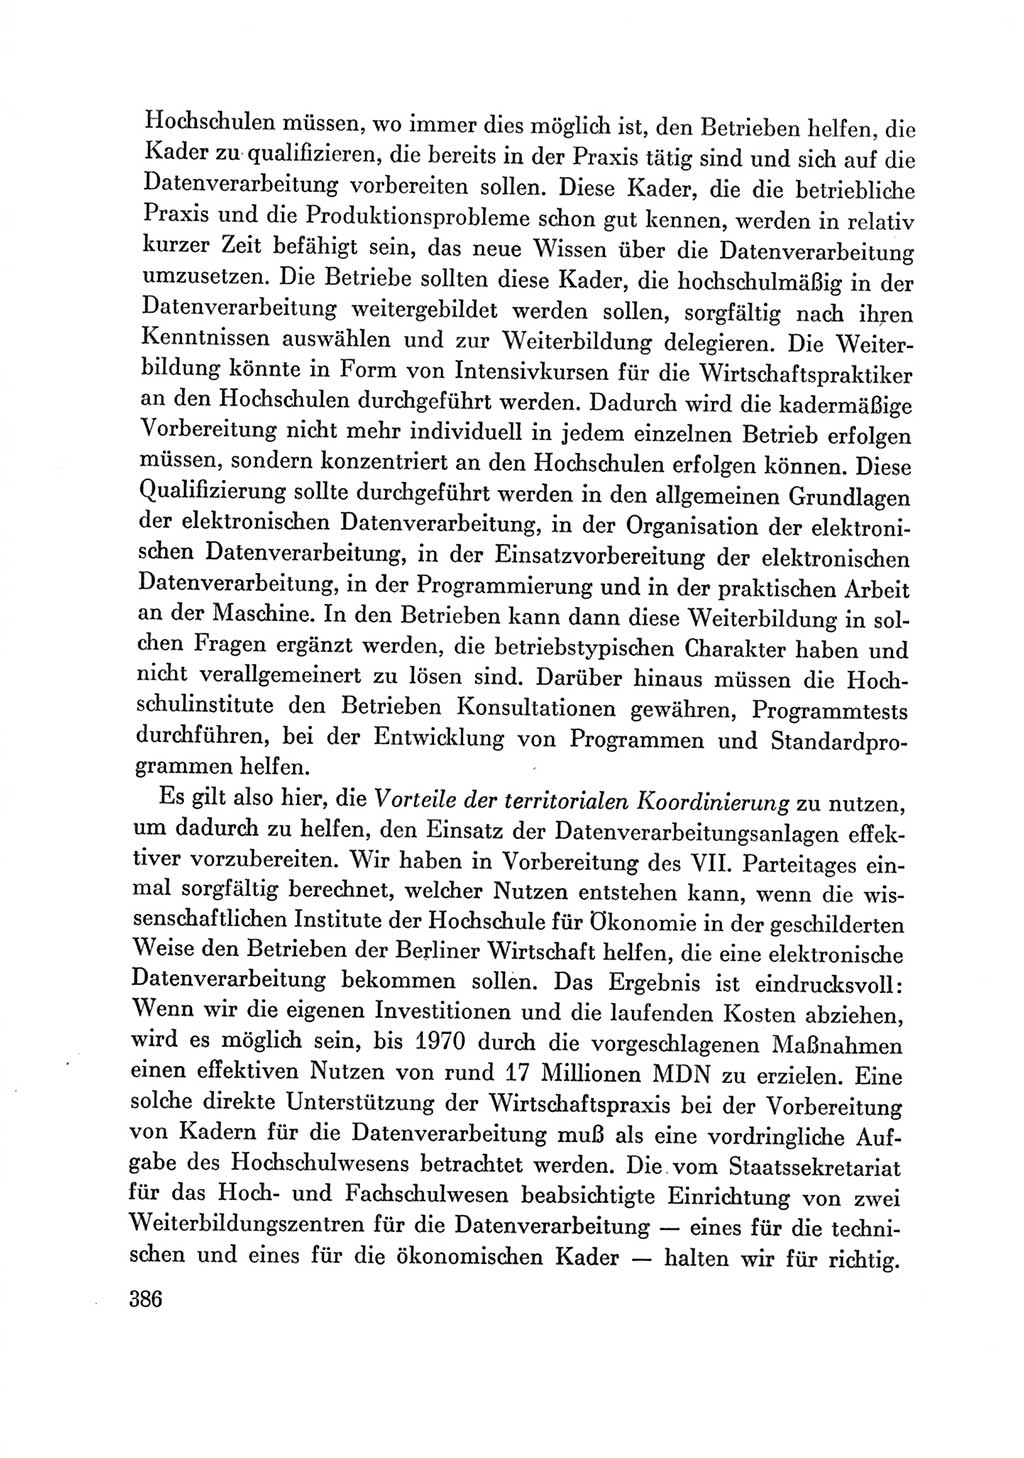 Protokoll der Verhandlungen des Ⅶ. Parteitages der Sozialistischen Einheitspartei Deutschlands (SED) [Deutsche Demokratische Republik (DDR)] 1967, Band Ⅲ, Seite 386 (Prot. Verh. Ⅶ. PT SED DDR 1967, Bd. Ⅲ, S. 386)